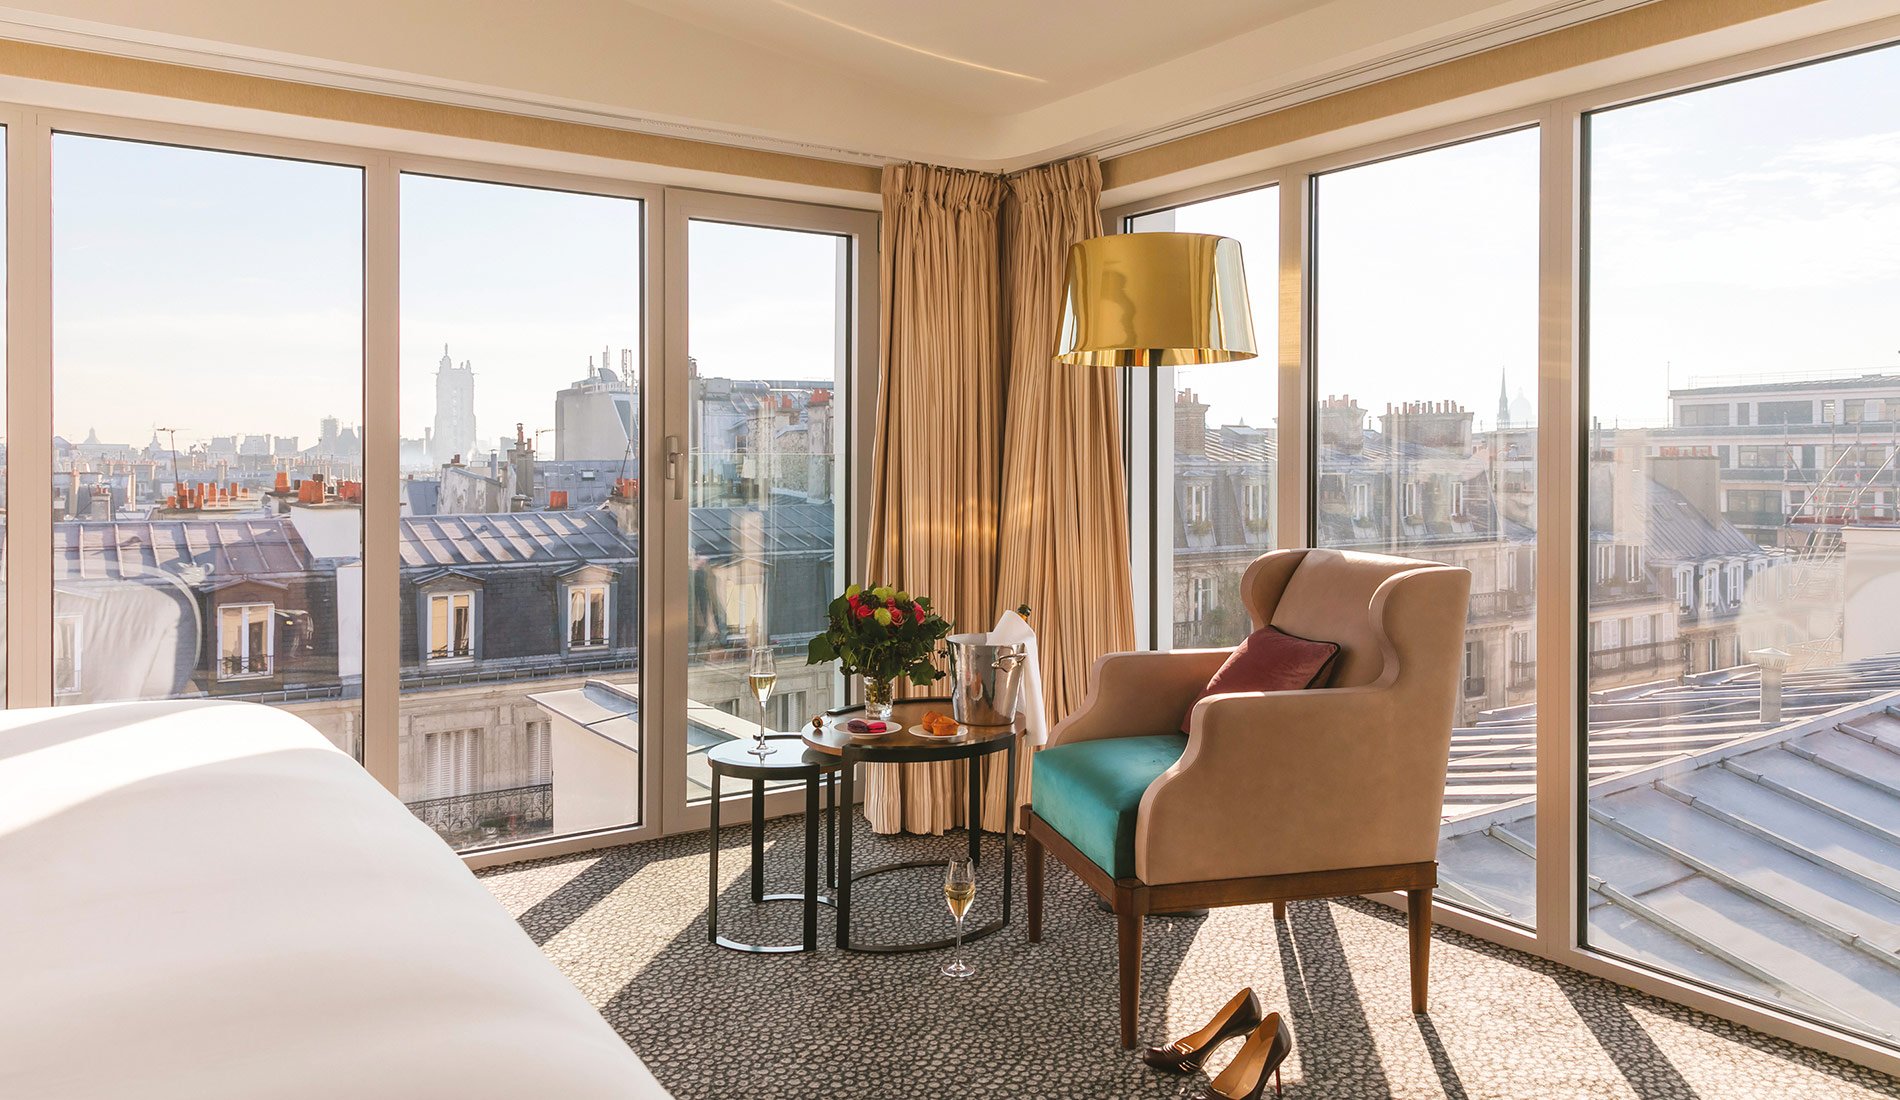 Hôtel de luxe - Maison Albar Hotels Le Pont-Neuf - 5 étoiles - chambre avec vue panoramique